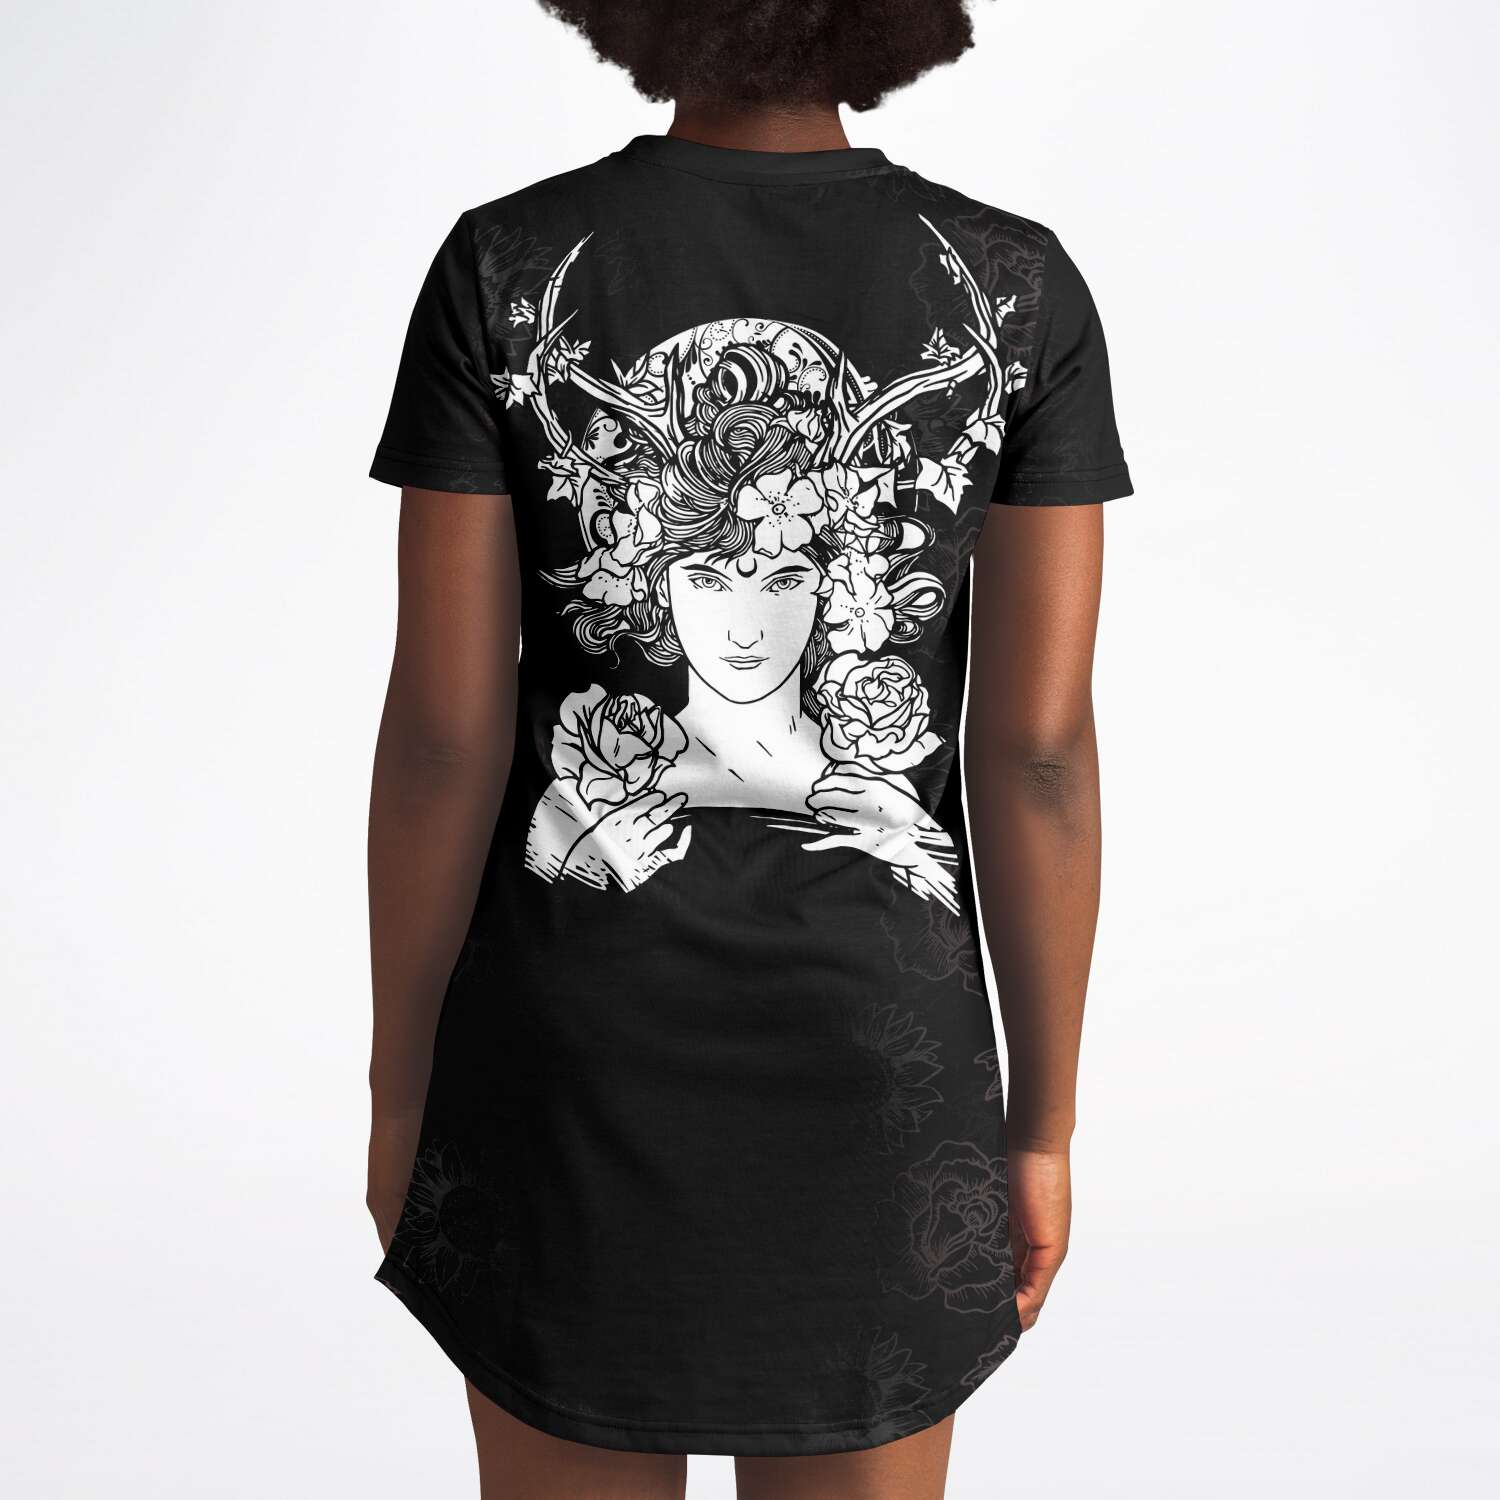 Goddess Gaia T-shirt Dress